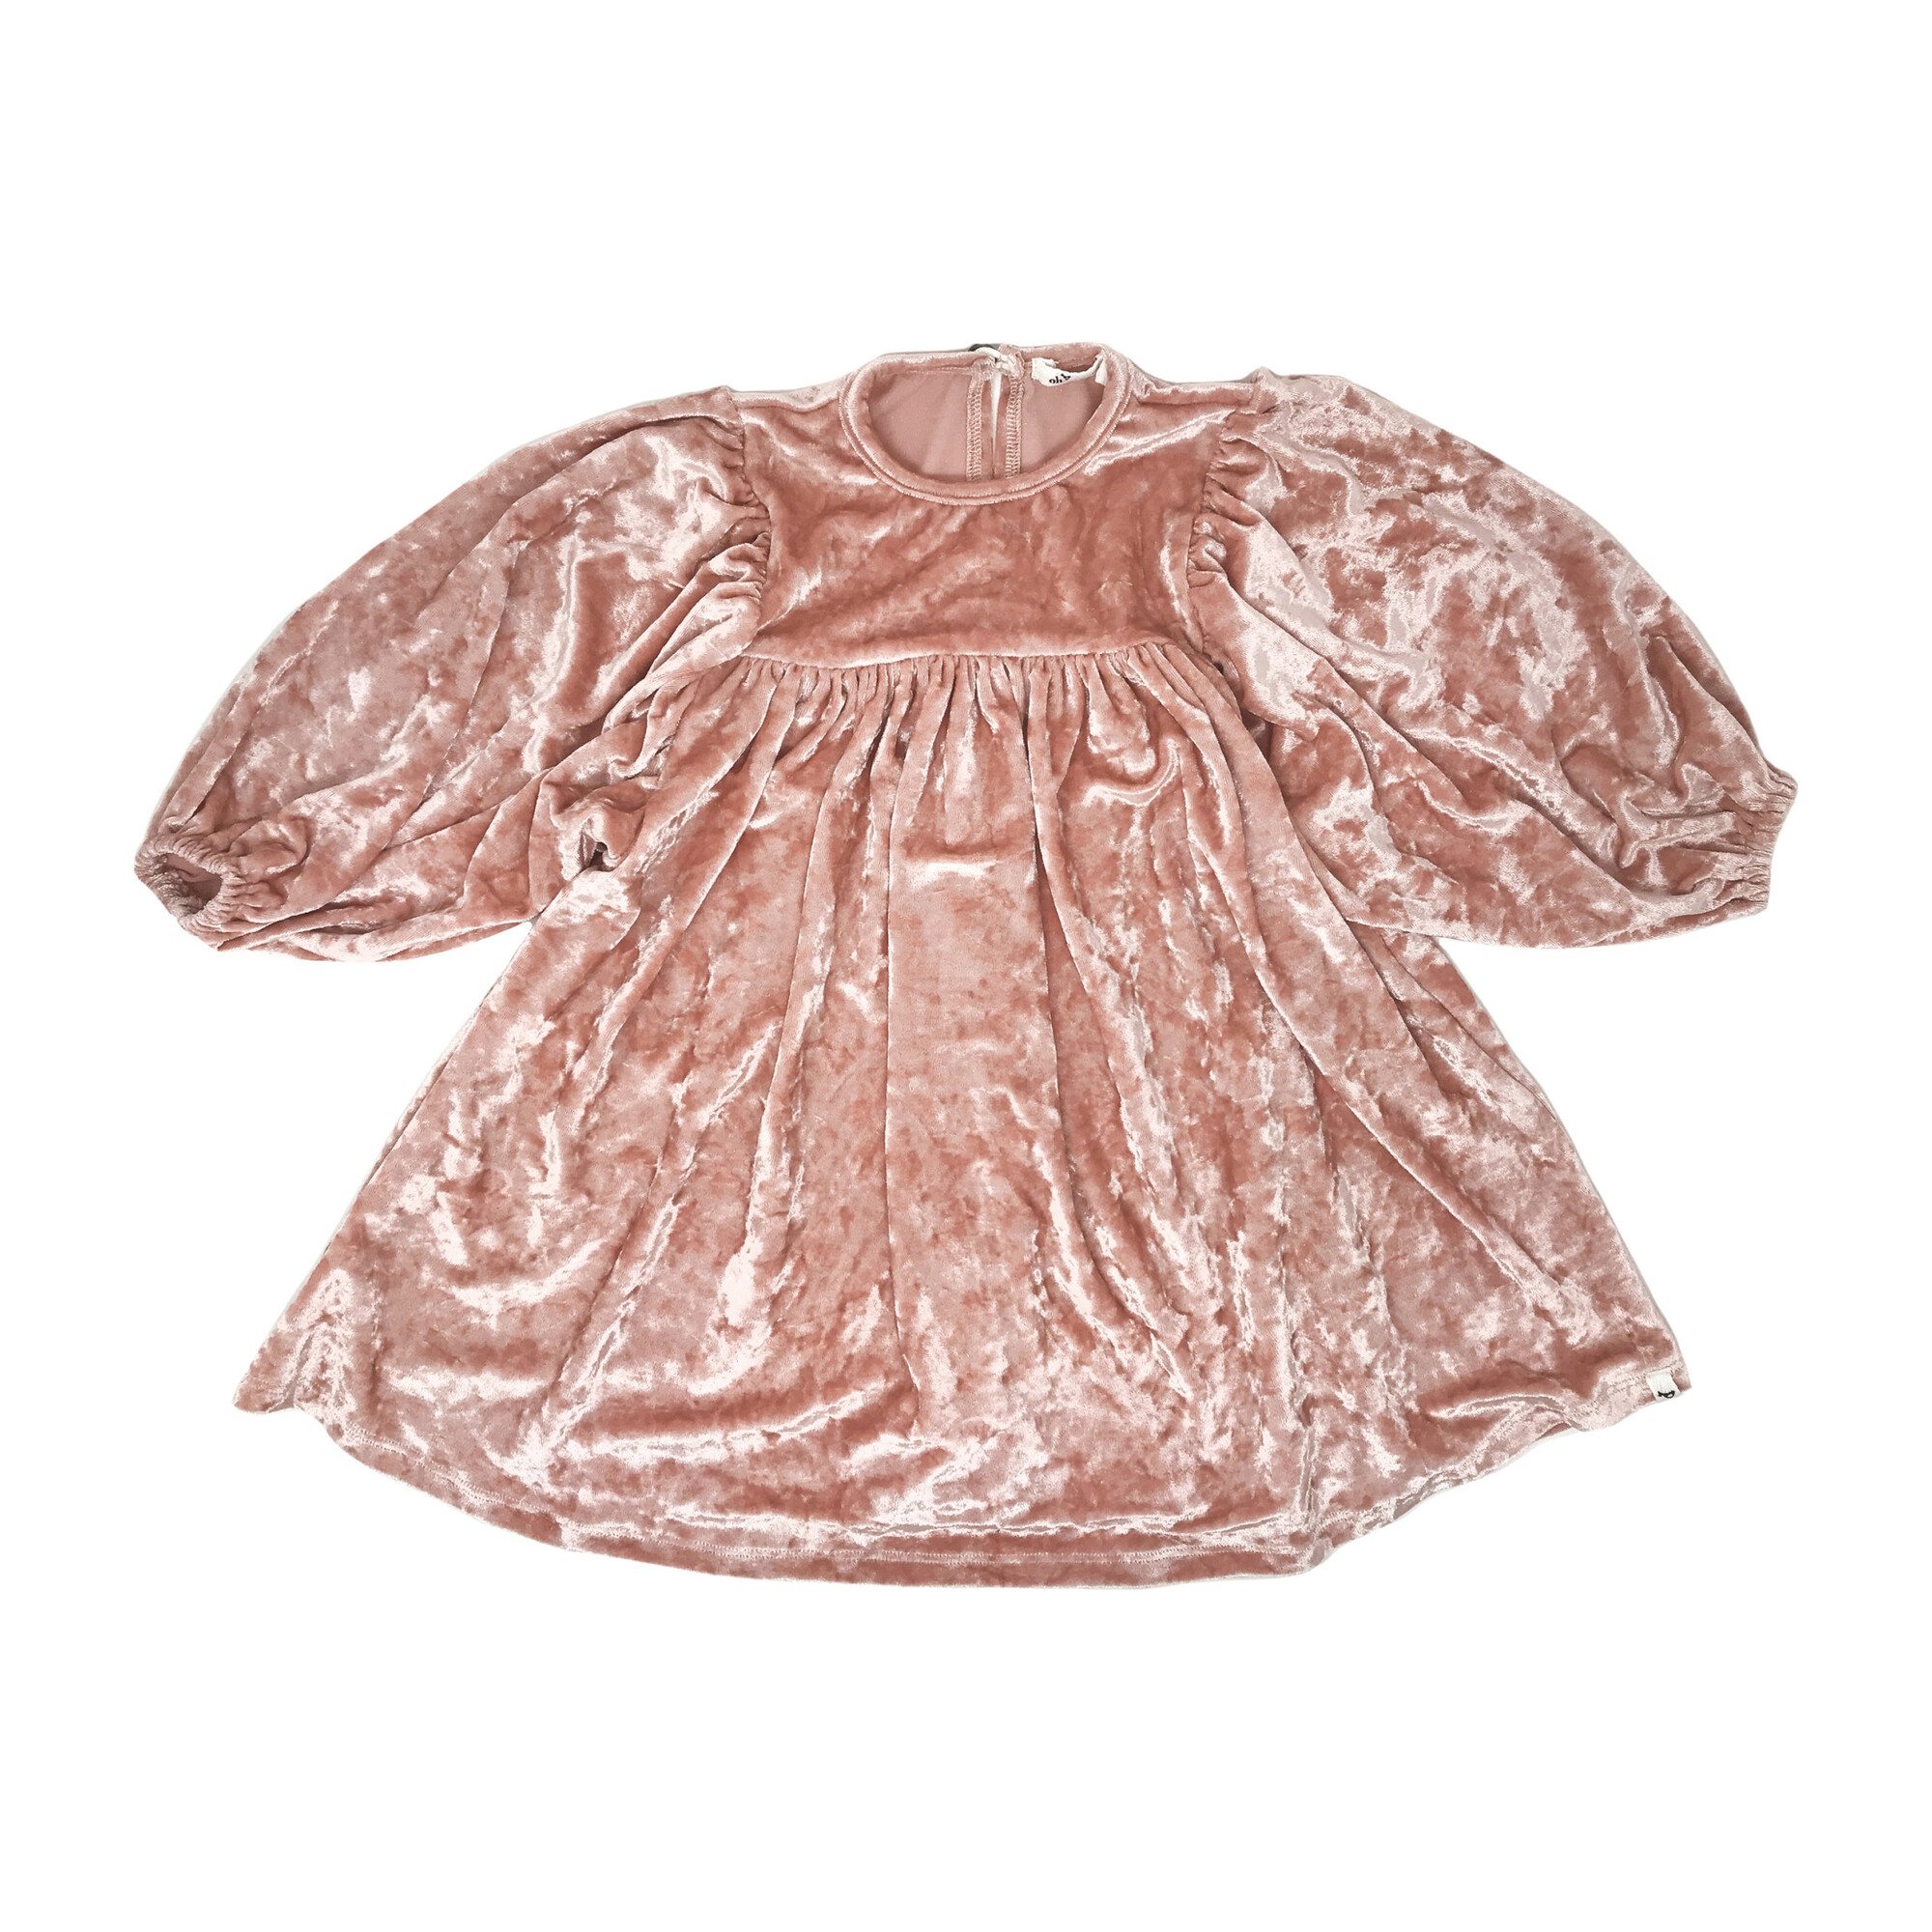 Raphael Velvet Dress, Pale Pink Crush - Kids Girl Clothing Dresses ...